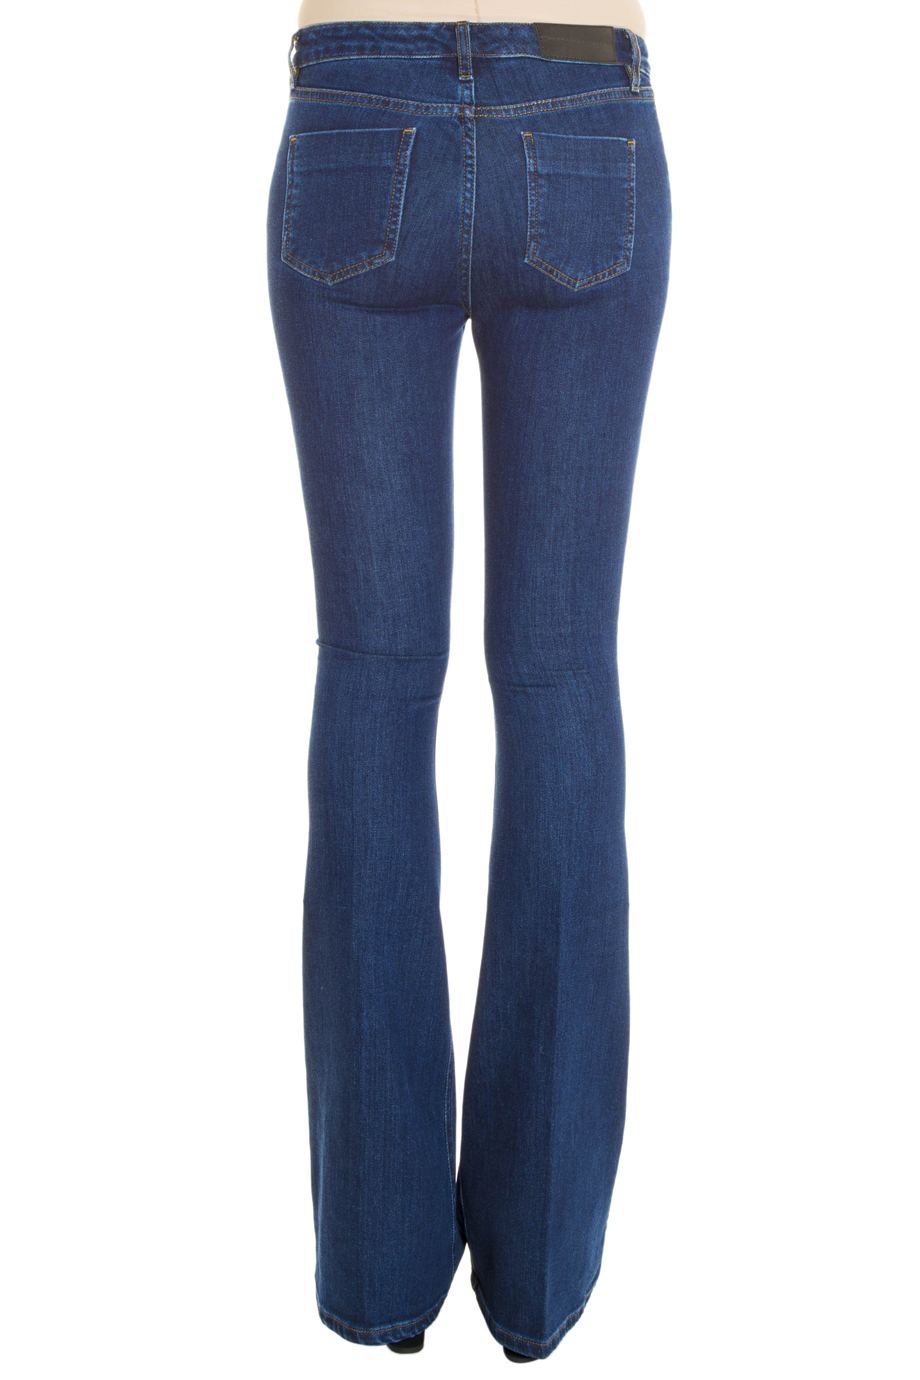 Victoria Beckham Denim Flare Jeans in Blue - Lyst